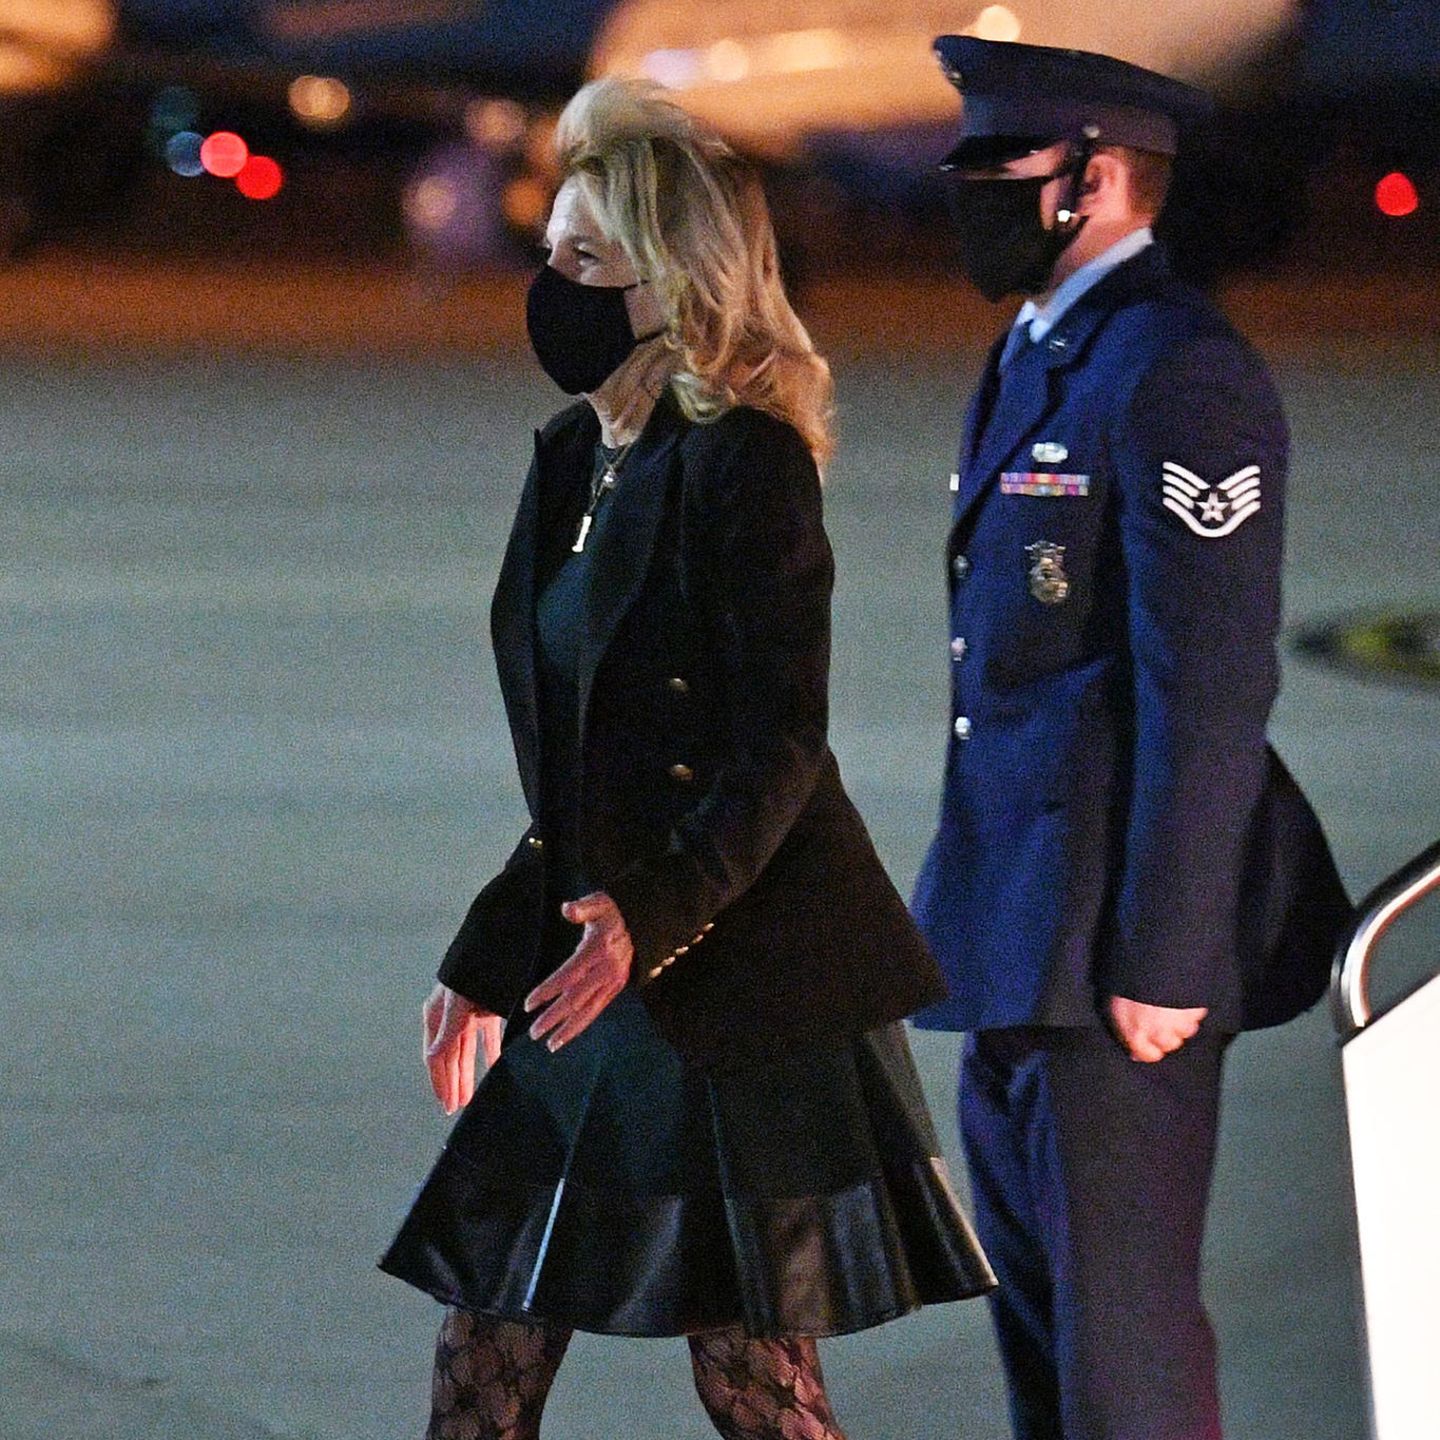 Dr. Jill Biden zeigt sich bei der Ankunft auf der Air Force Base in Maryland  fast schon verrucht: Sie trägt ein Kleid mit Lederapplikationen, dazu kombiniert sie hohe Stiefeletten und Spitzen-Strumpfhose. Businesstauglich wird's mit klassischem Blazer.